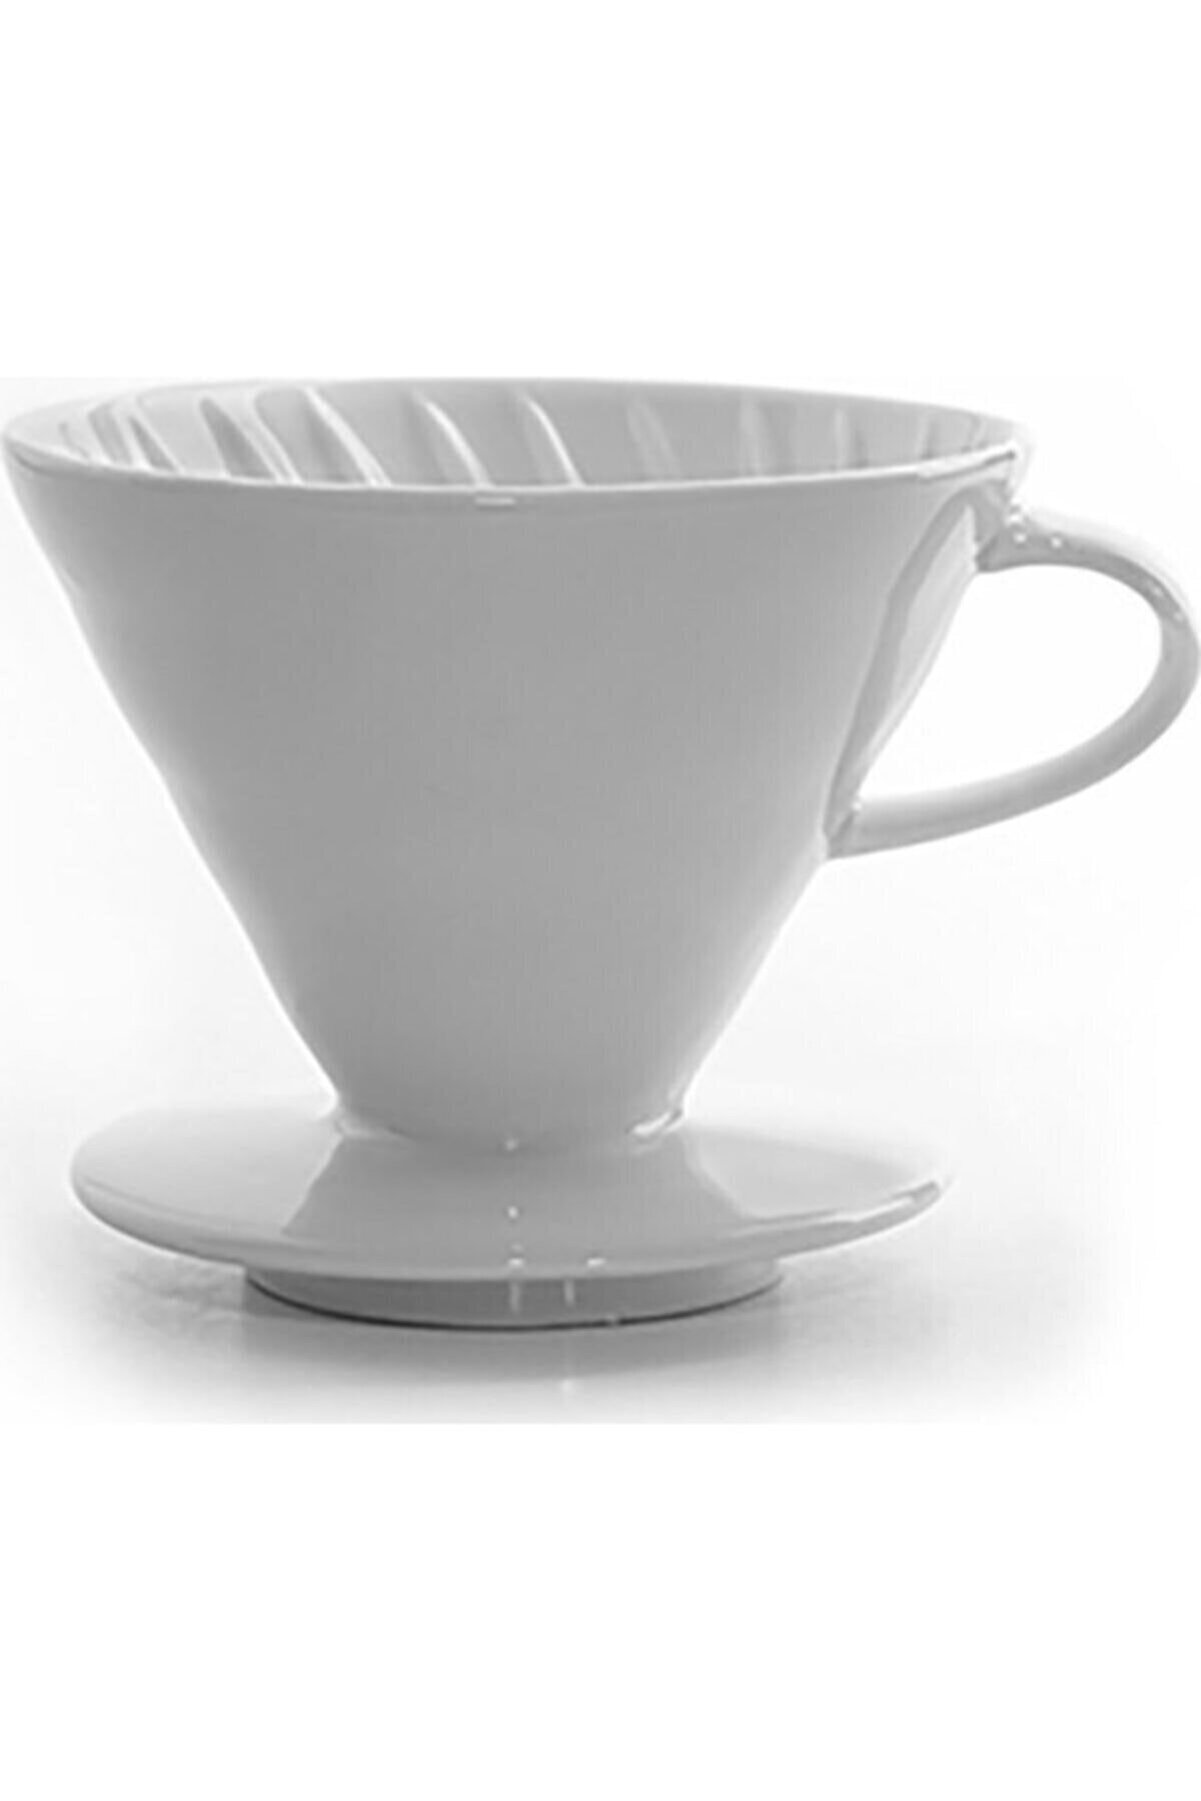 Epinox Seramik Kahve Demleme V60 02 - Beyaz Dripper